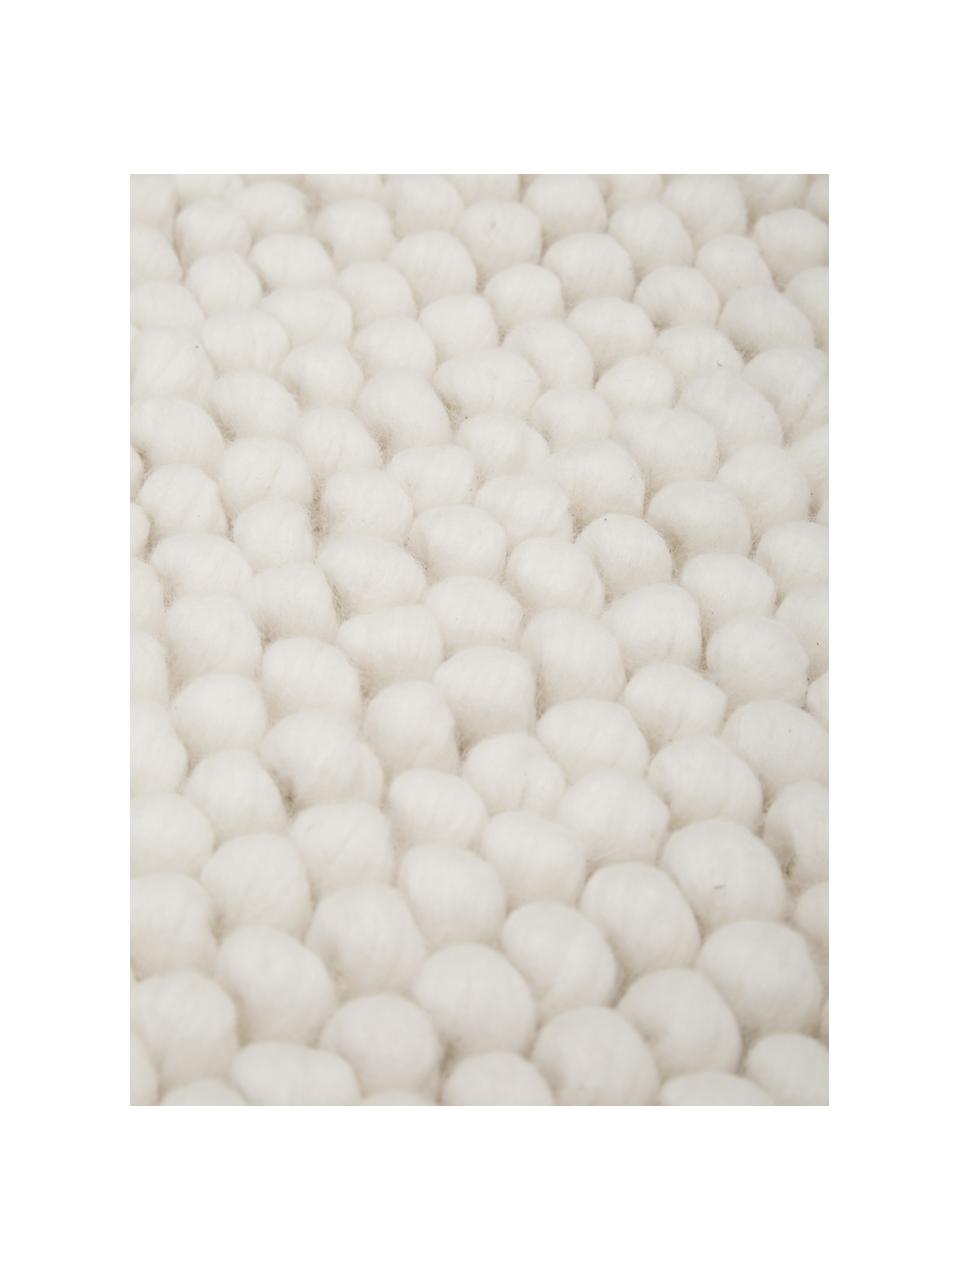 Dywan z wełny Pebble, 80% wełna nowozelandzka, 20% nylon
Włókna dywanów wełnianych mogą nieznacznie rozluźniać się w pierwszych tygodniach użytkowania, co ustępuje po pewnym czasie, Biały, S 200 x D 300 cm (Rozmiar L)